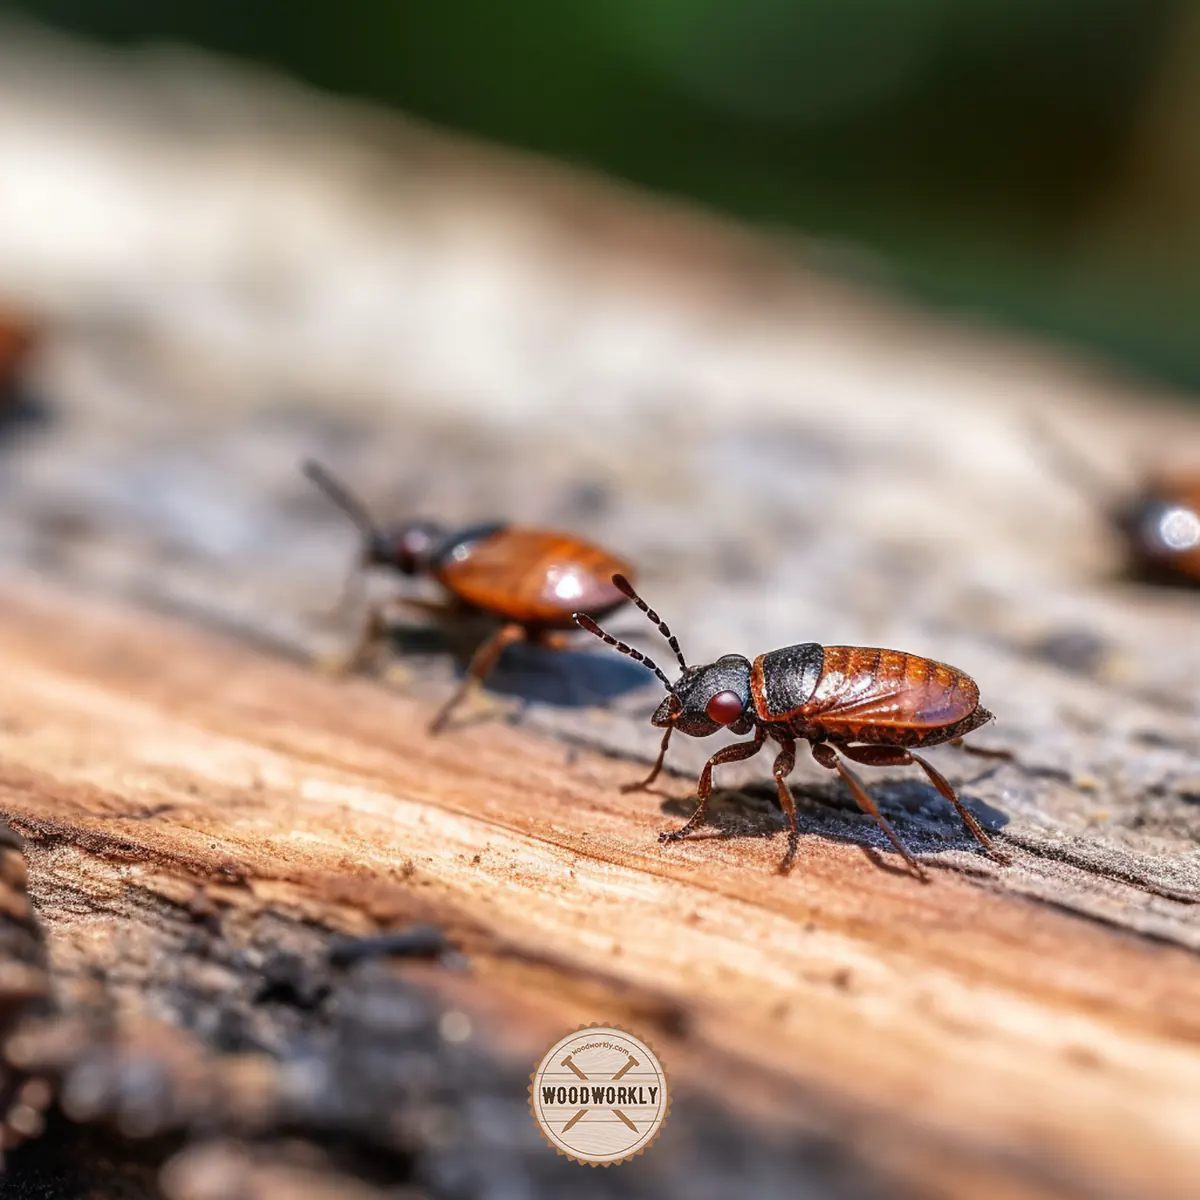 Dead bugs on cedar wood surface